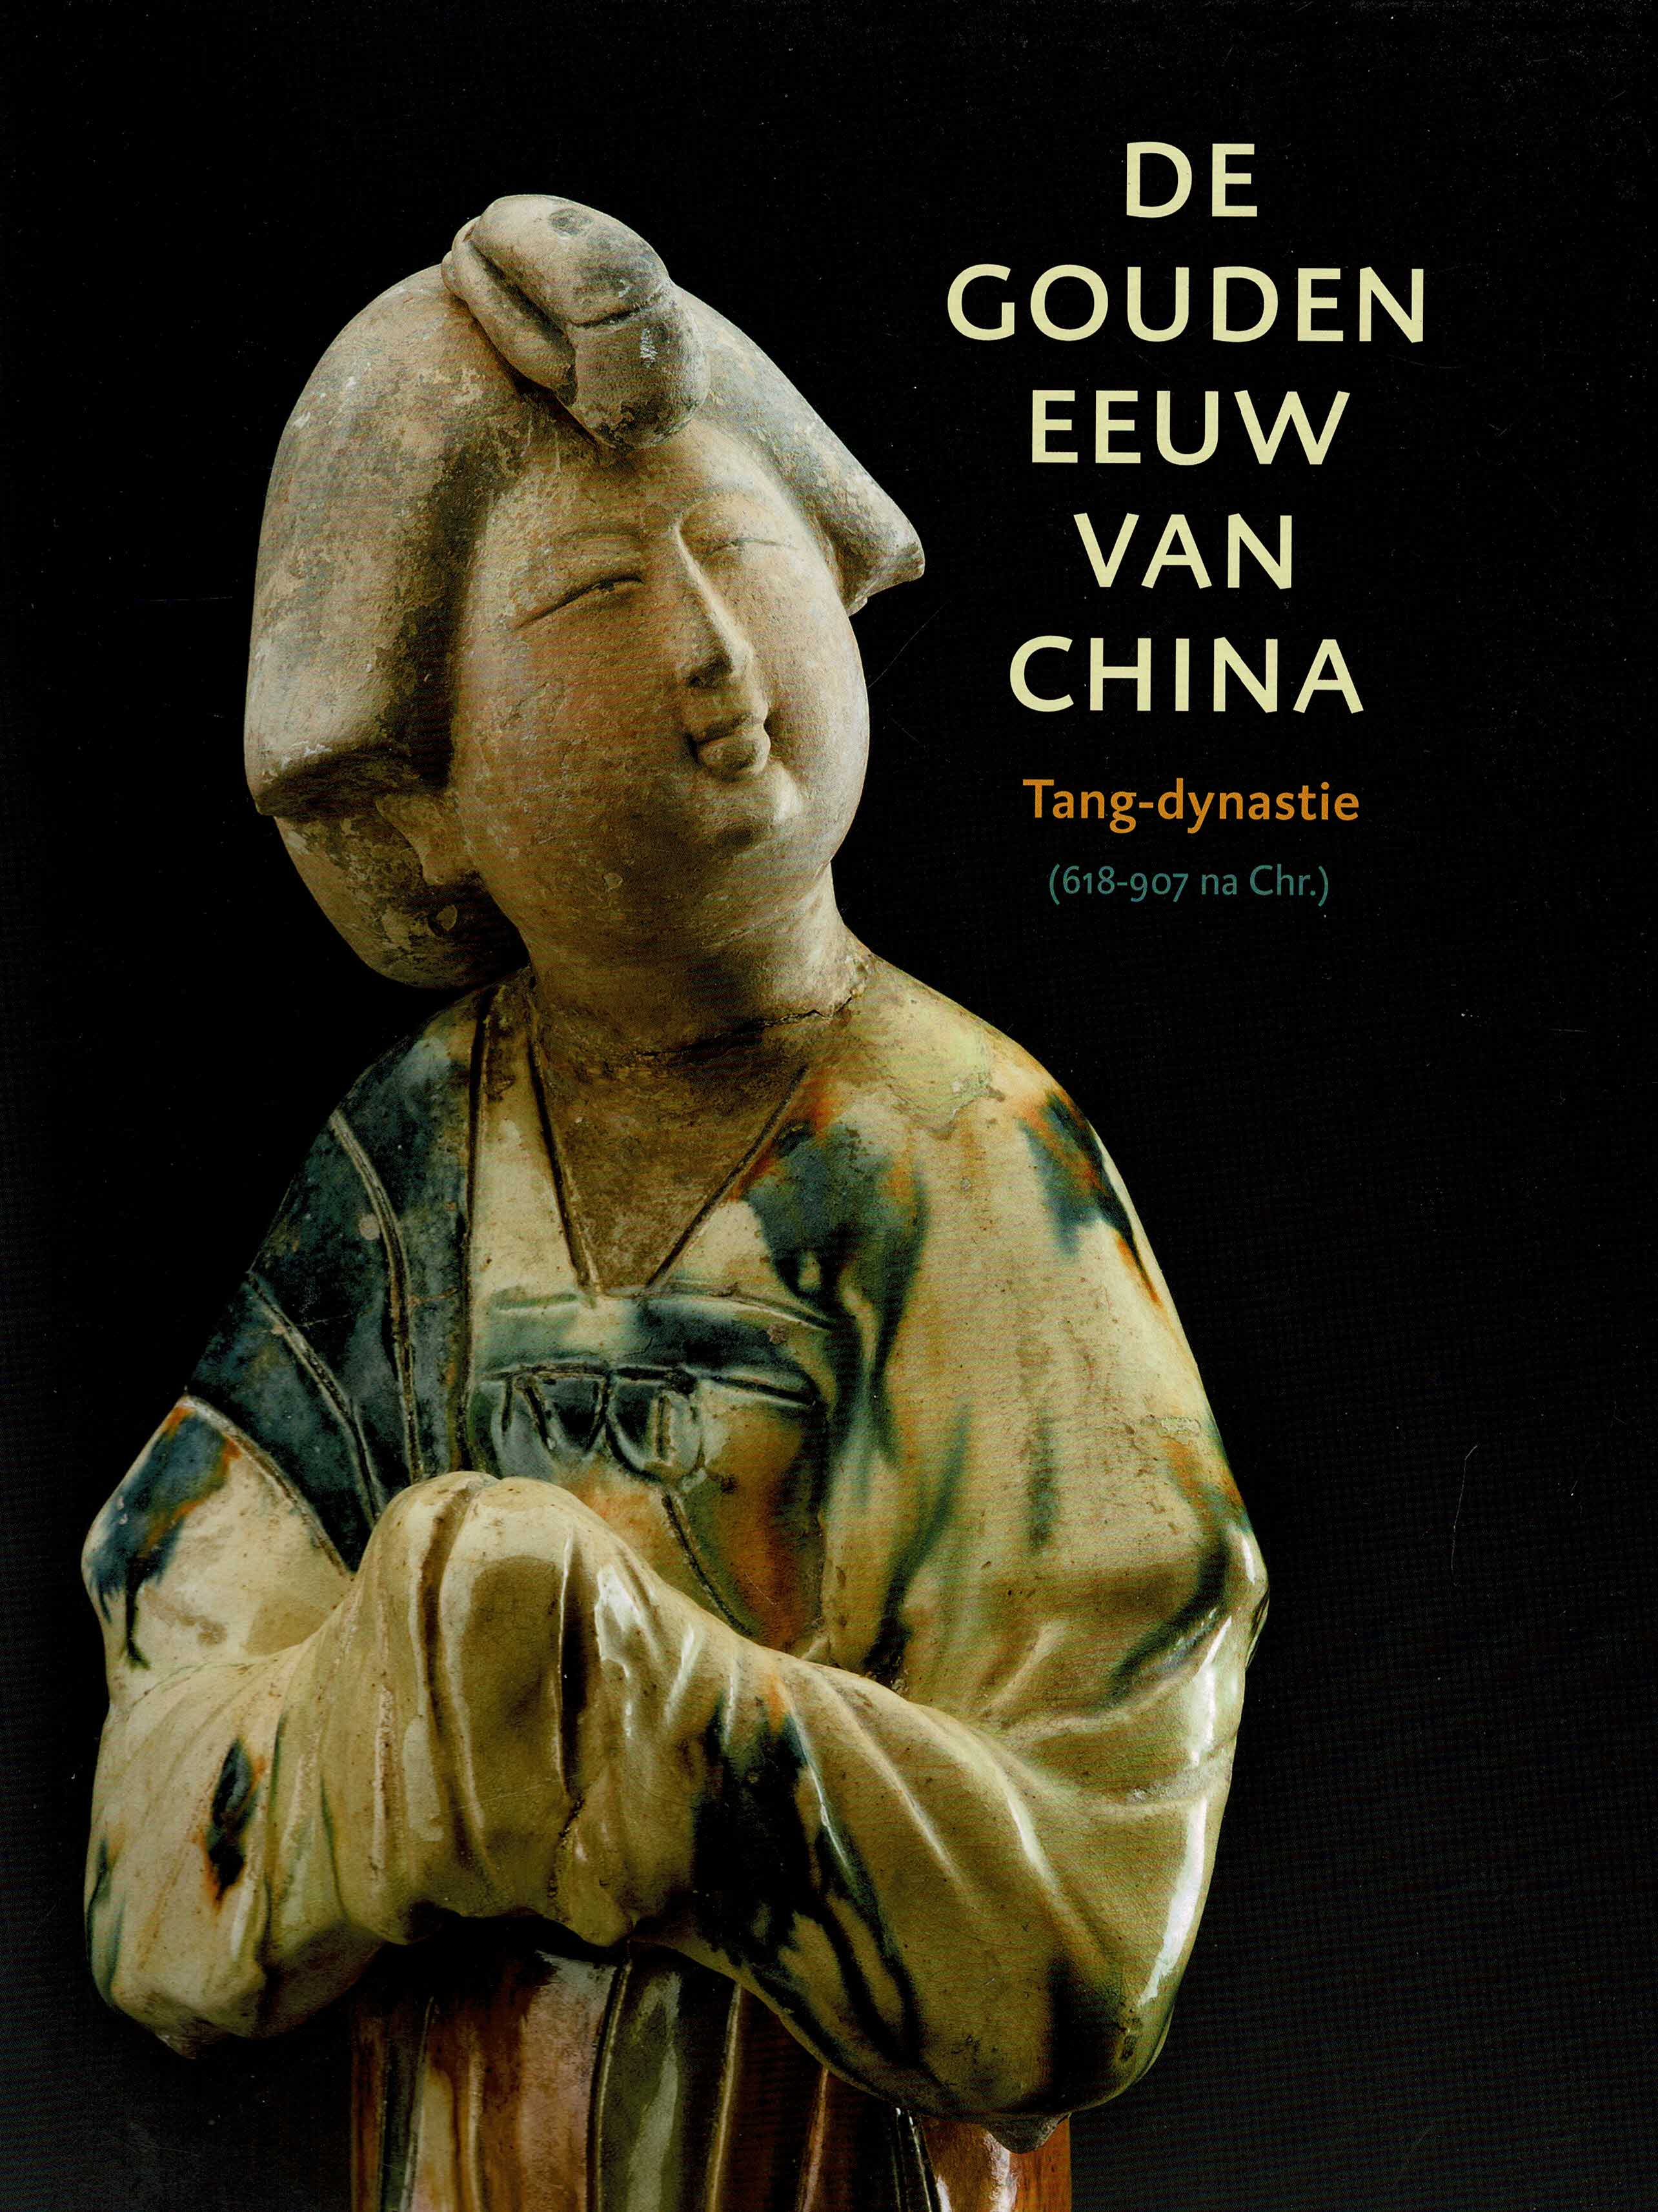 Mater, Benoit - De Gouden Eeuw van China. Tang Dynastie 618-907 na Chr.